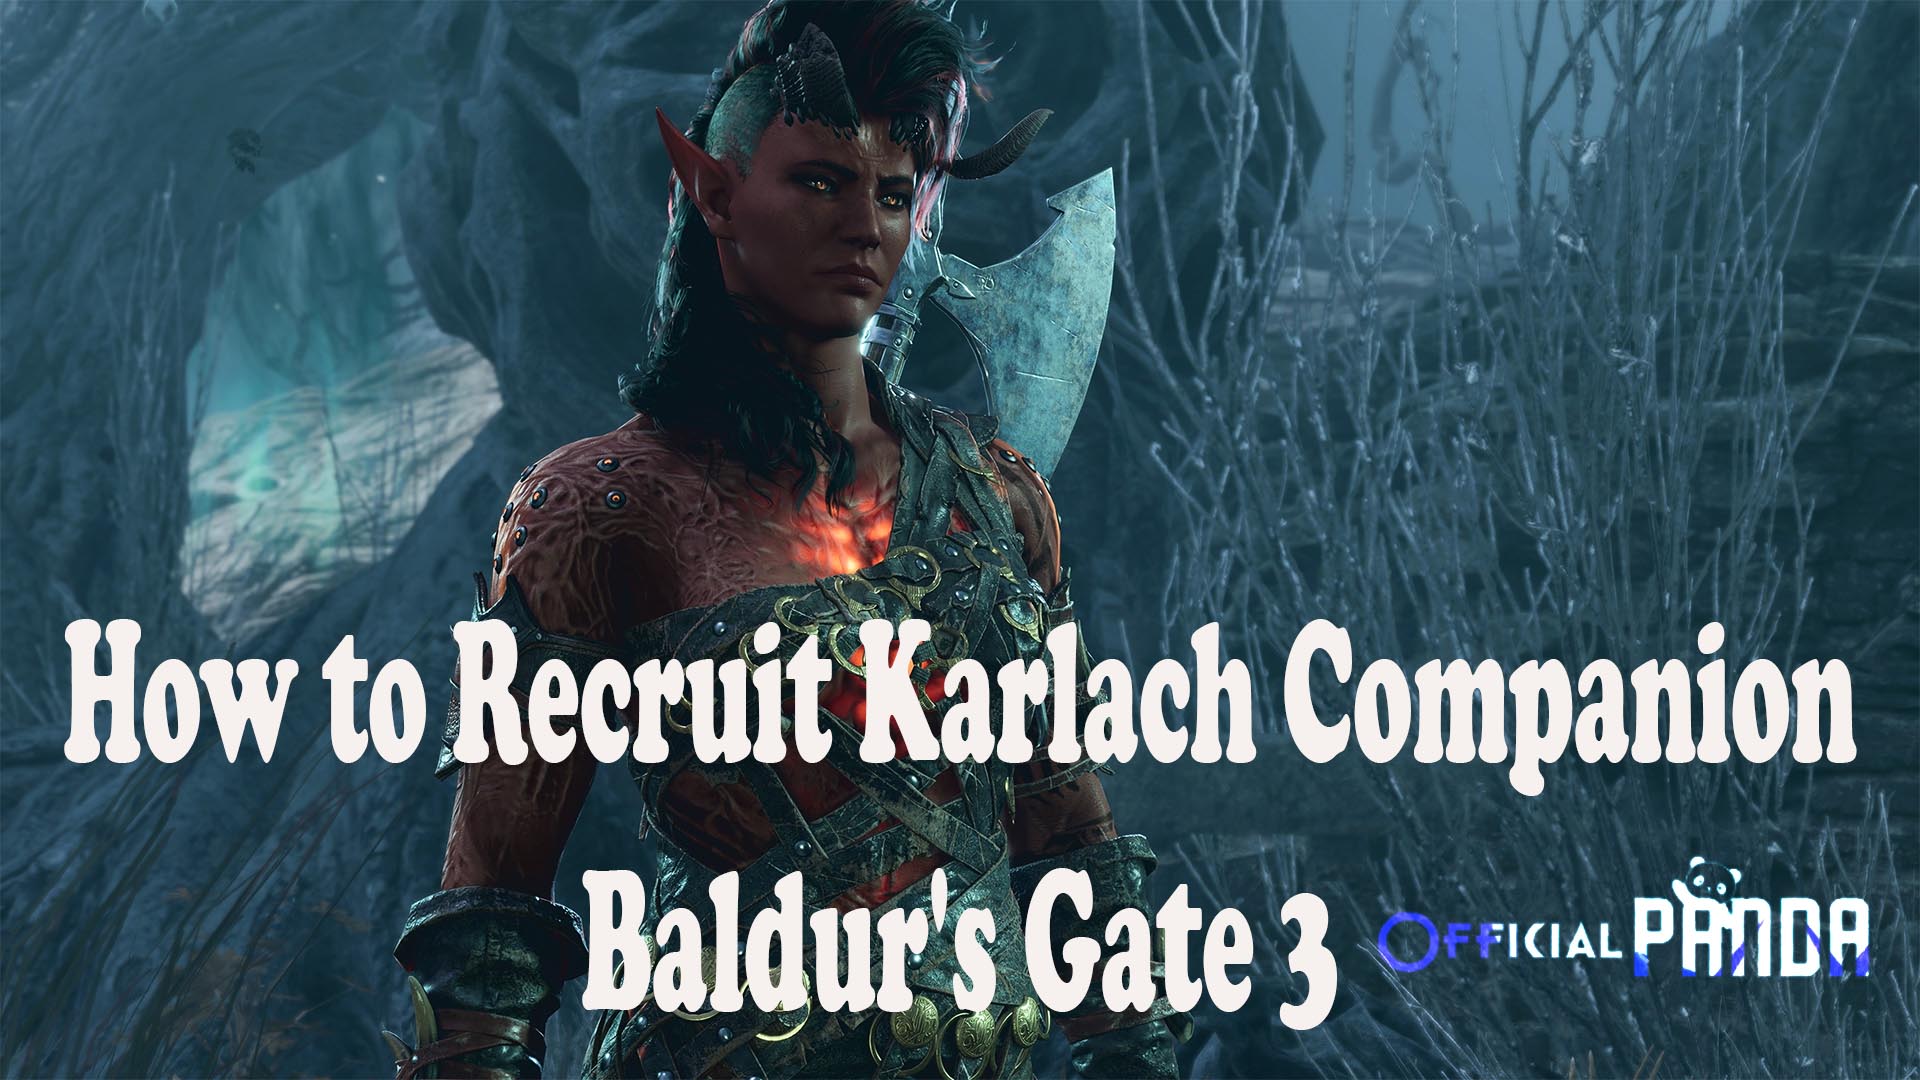 How to Recruit Karlach Companion Baldur's Gate 3